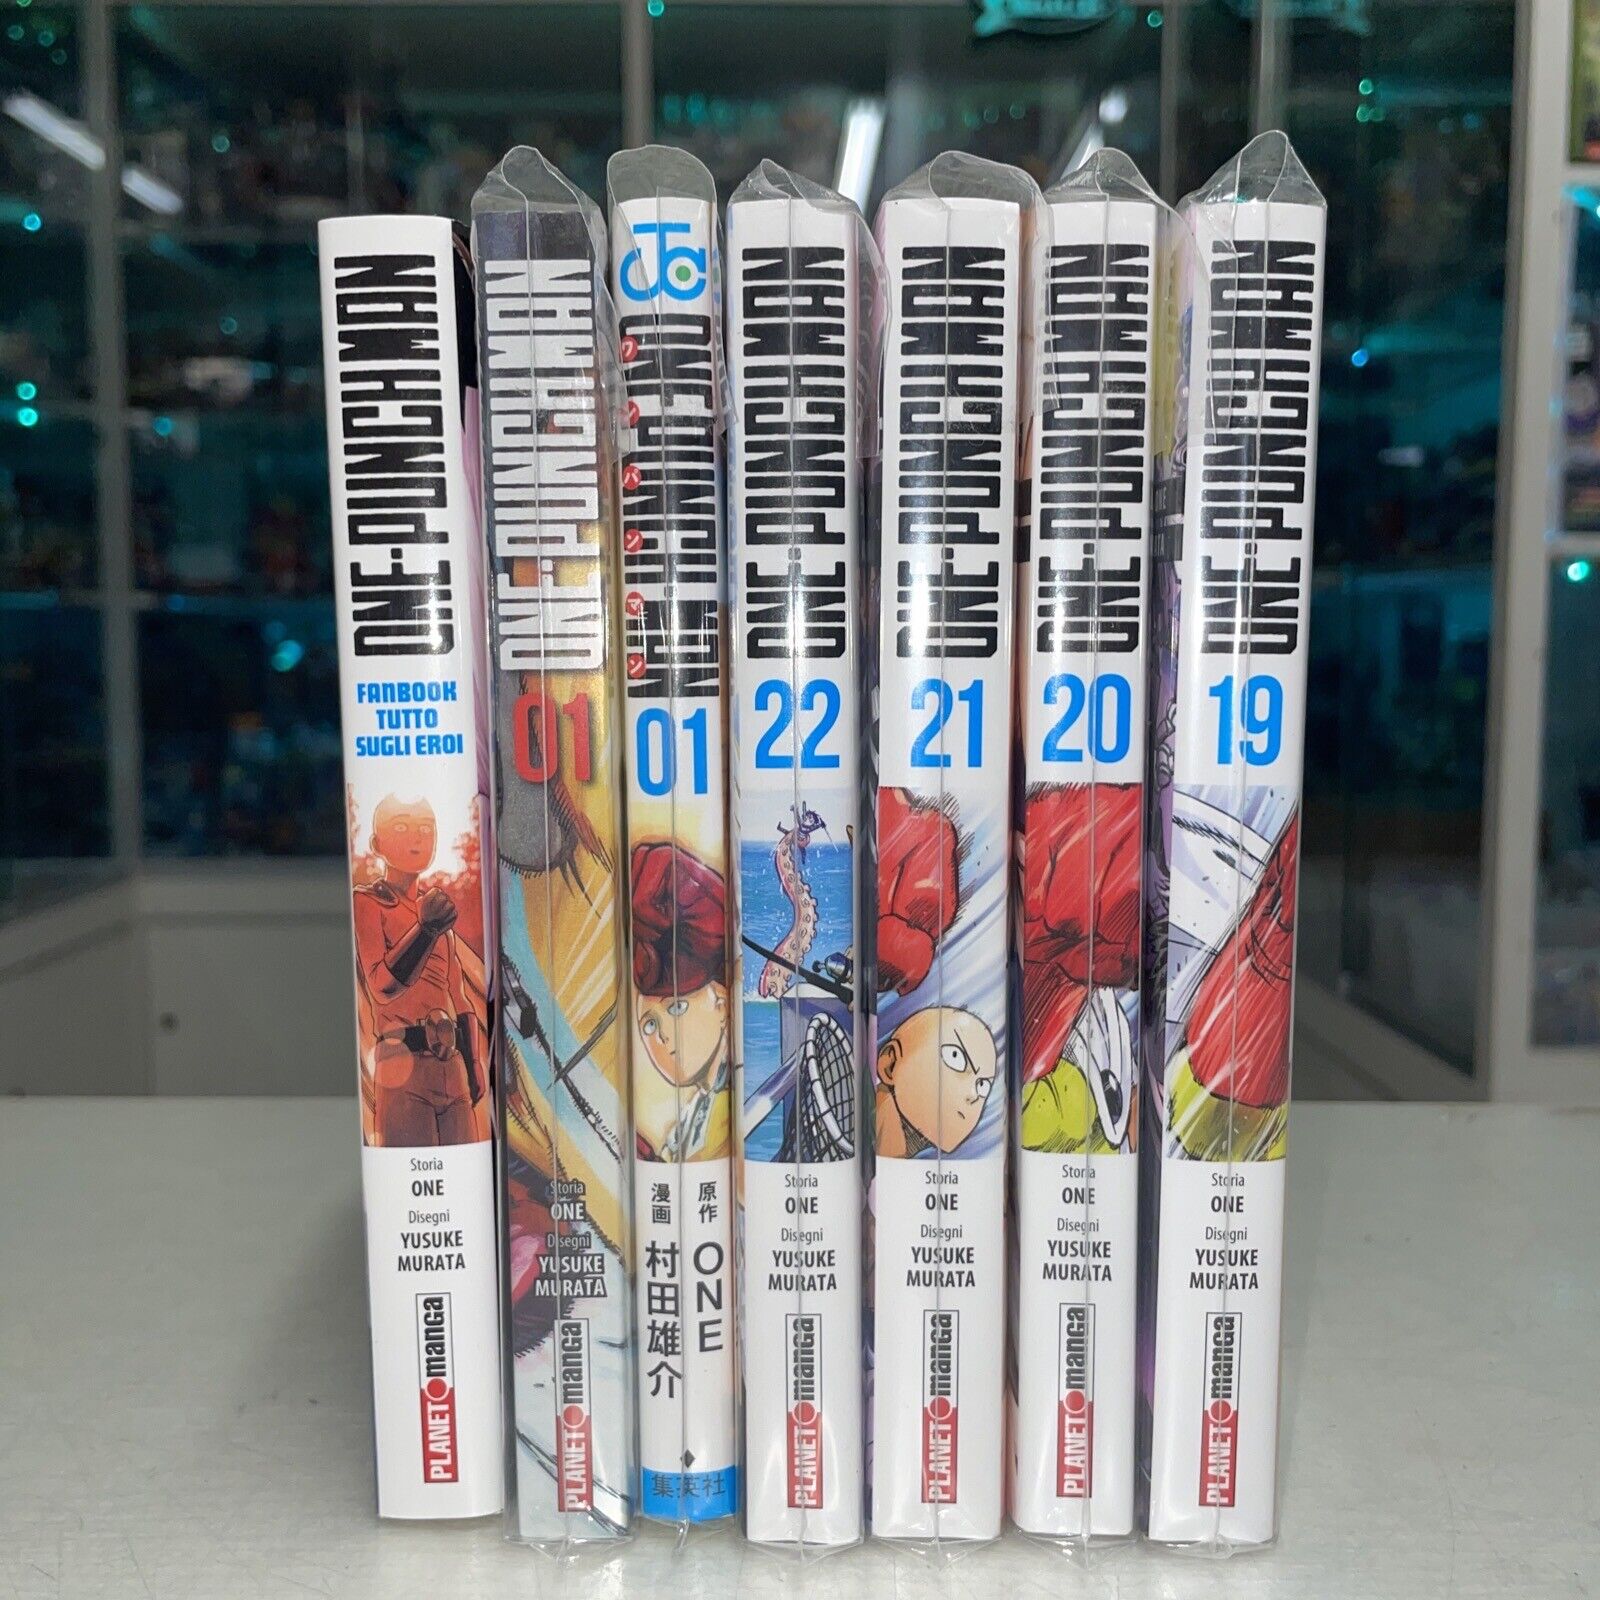 ONE-PUNCH-MAN-FANBOOK-tutto-sugli-eroi-Planet-Manga-Adesivi-e-Poster-145315034274-6